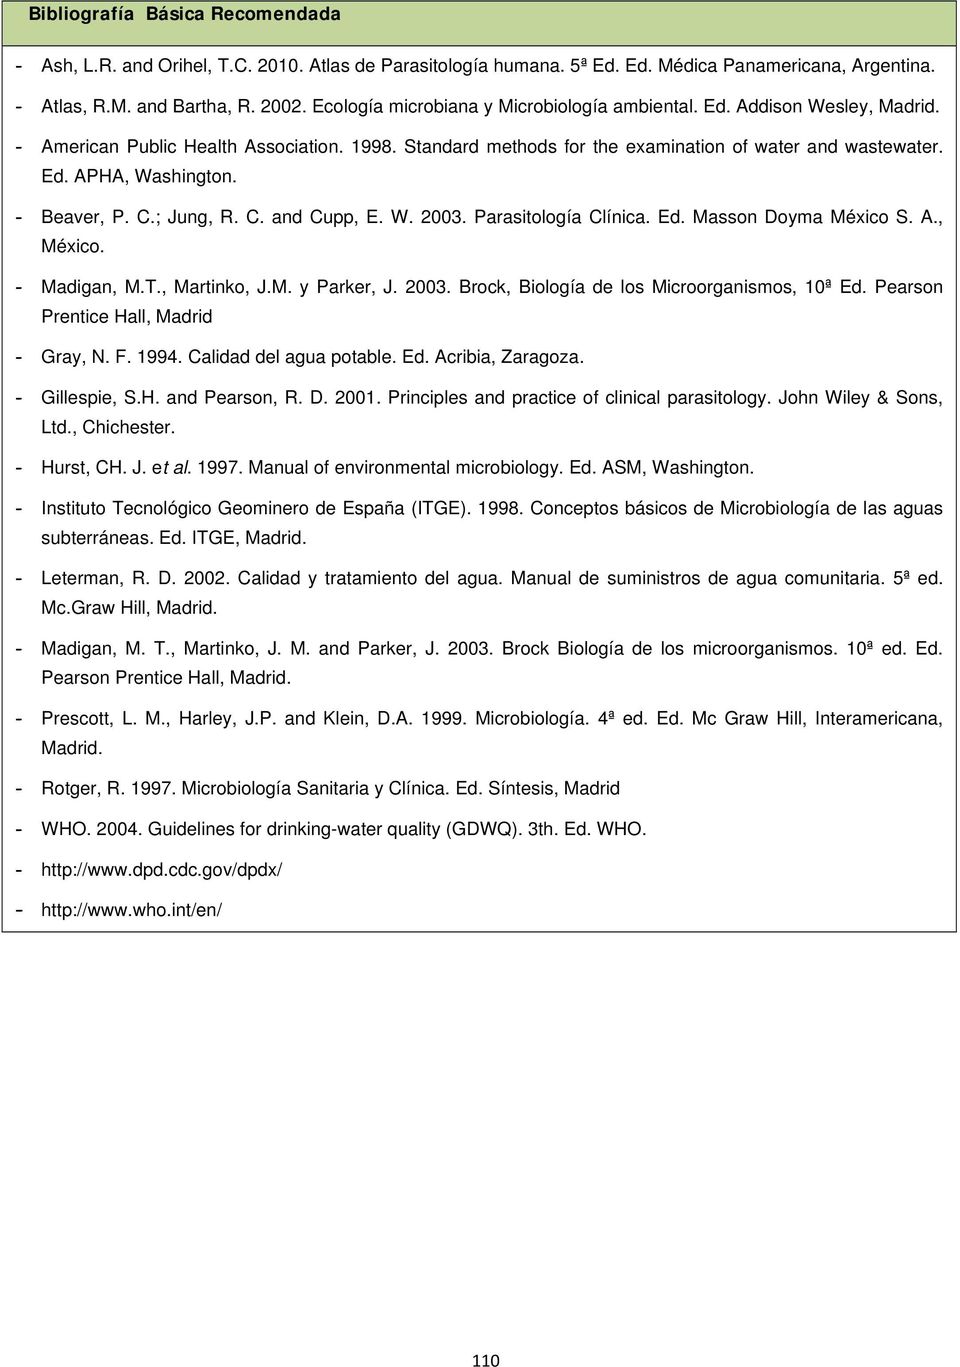 - Beaver, P. C.; Jung, R. C. and Cupp, E. W. 2003. Parasitología Clínica. Ed. Masson Doyma México S. A., México. - Madigan, M.T., Martinko, J.M. y Parker, J. 2003. Brock, Biología de los Microorganismos, 10ª Ed.